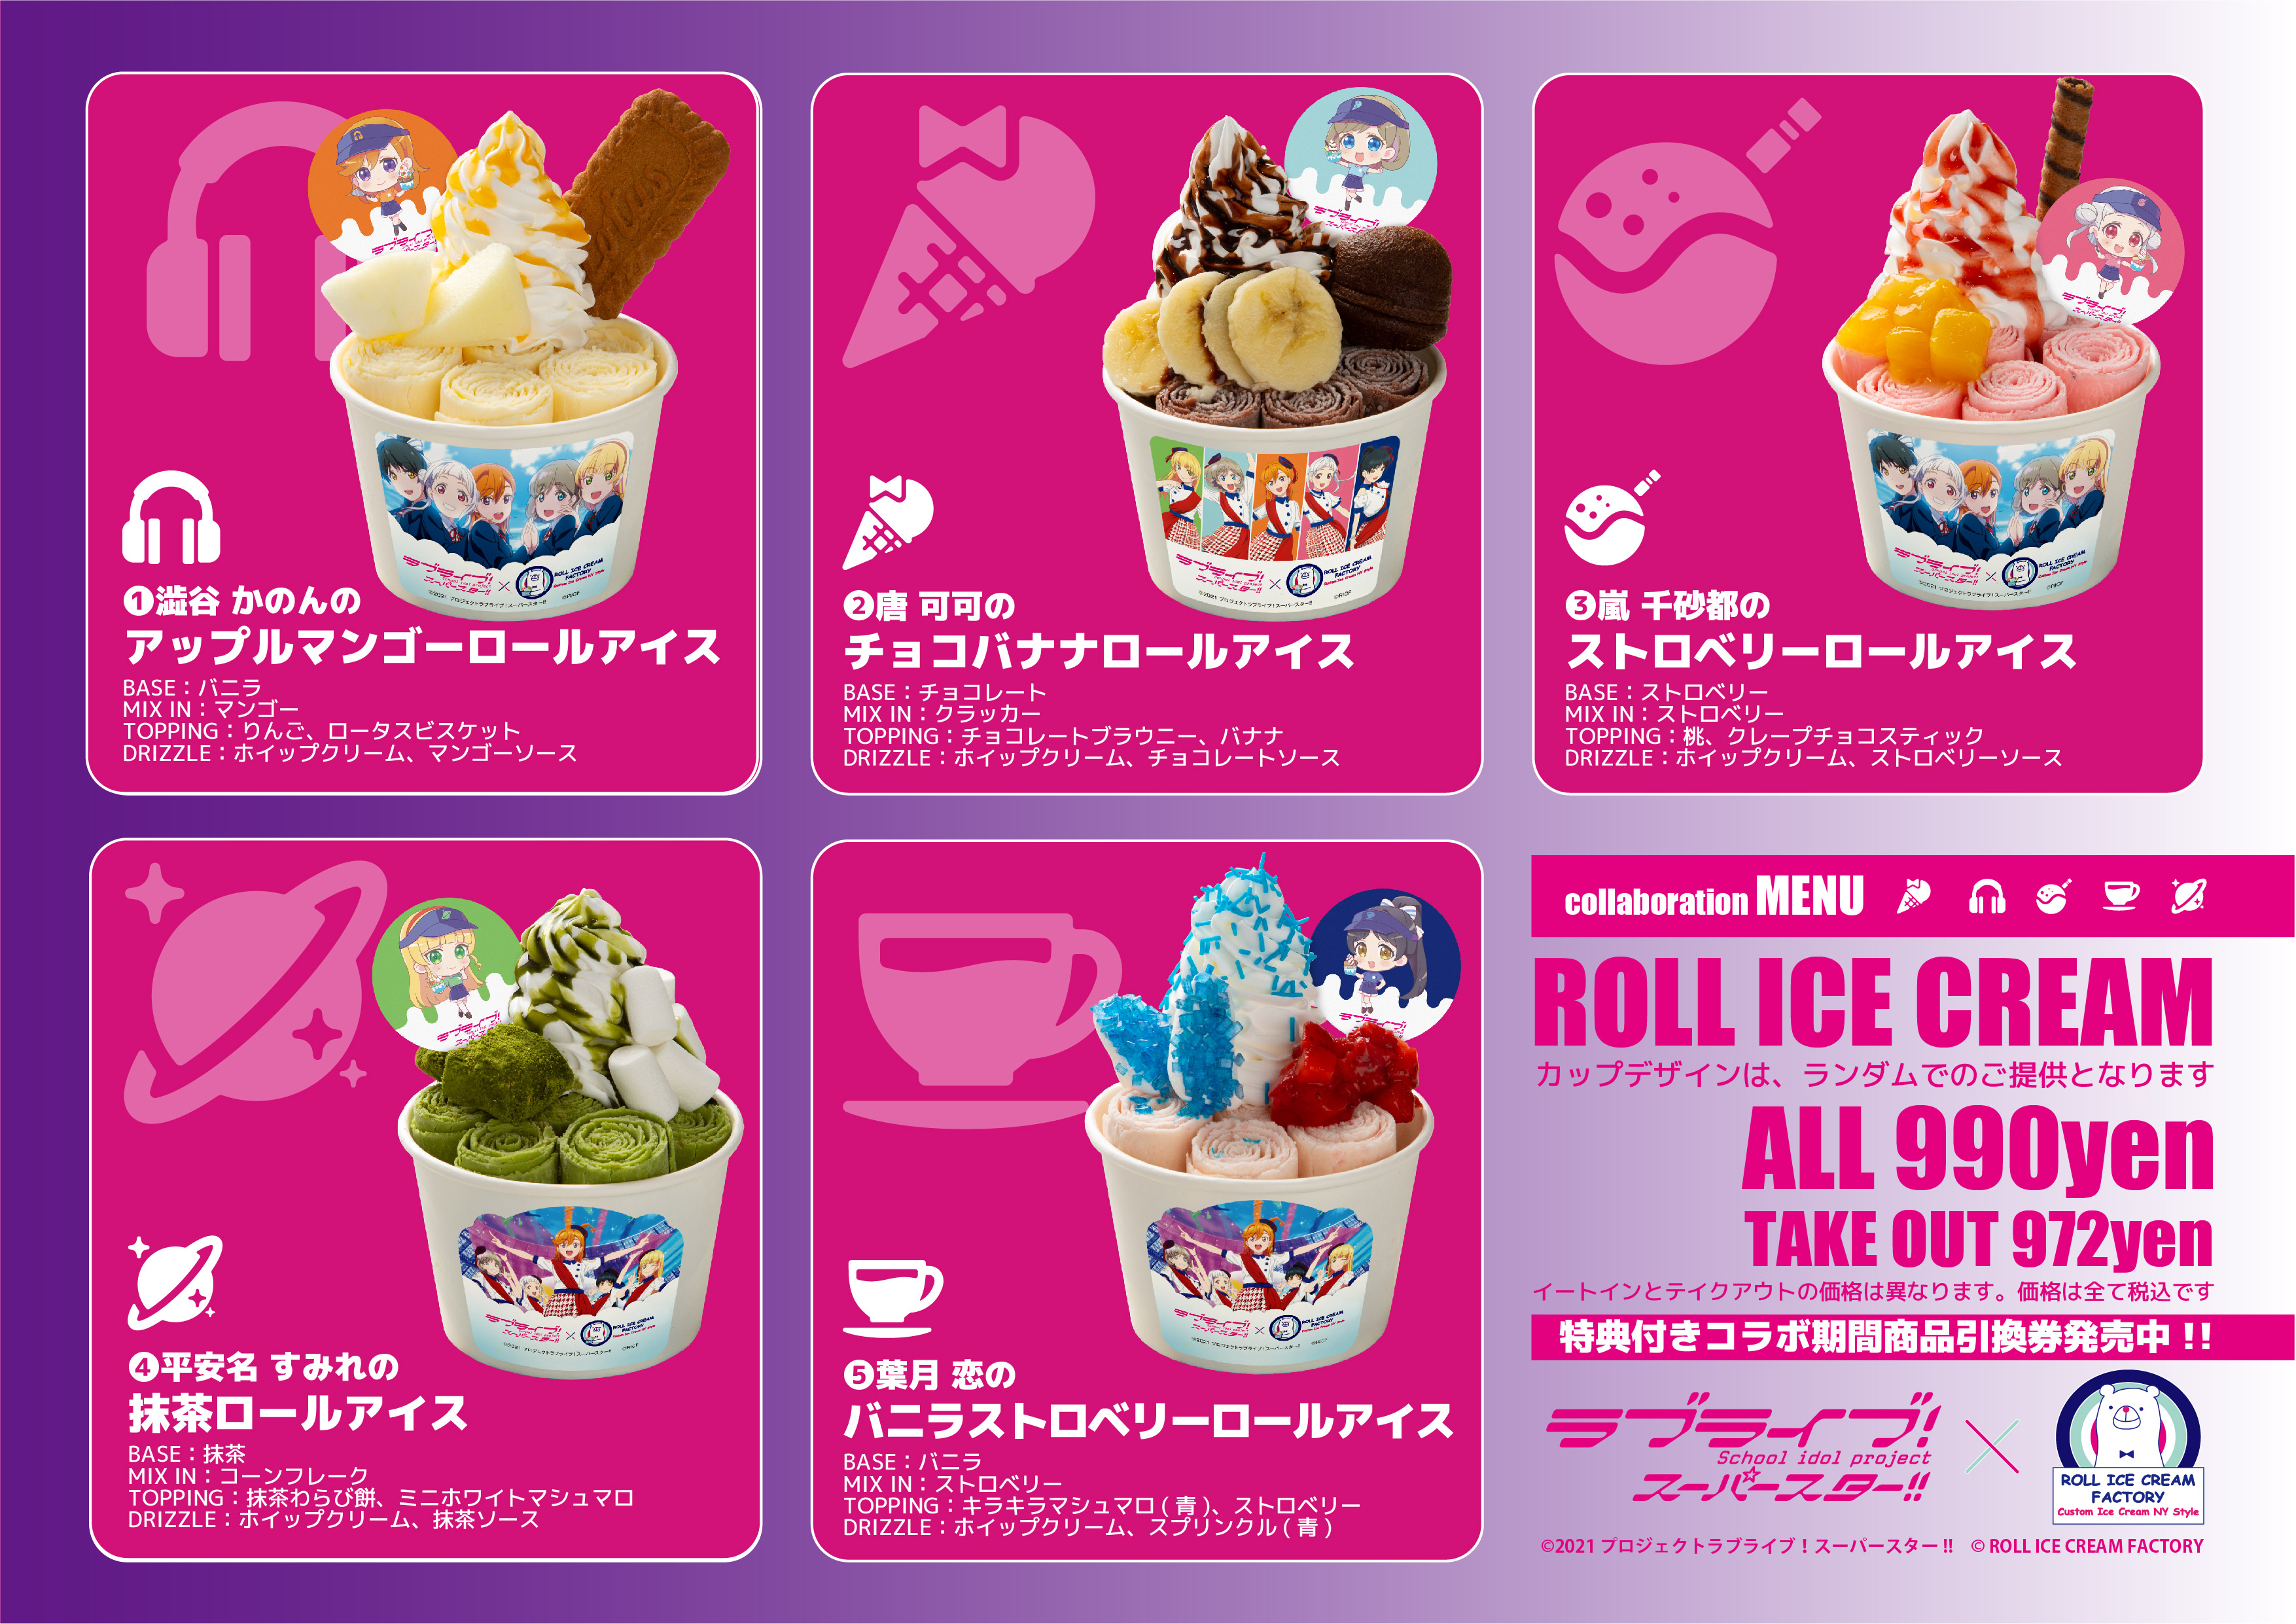 『ラブライブ！スーパースター!!』×「ロールアイスクリームファクトリー」1